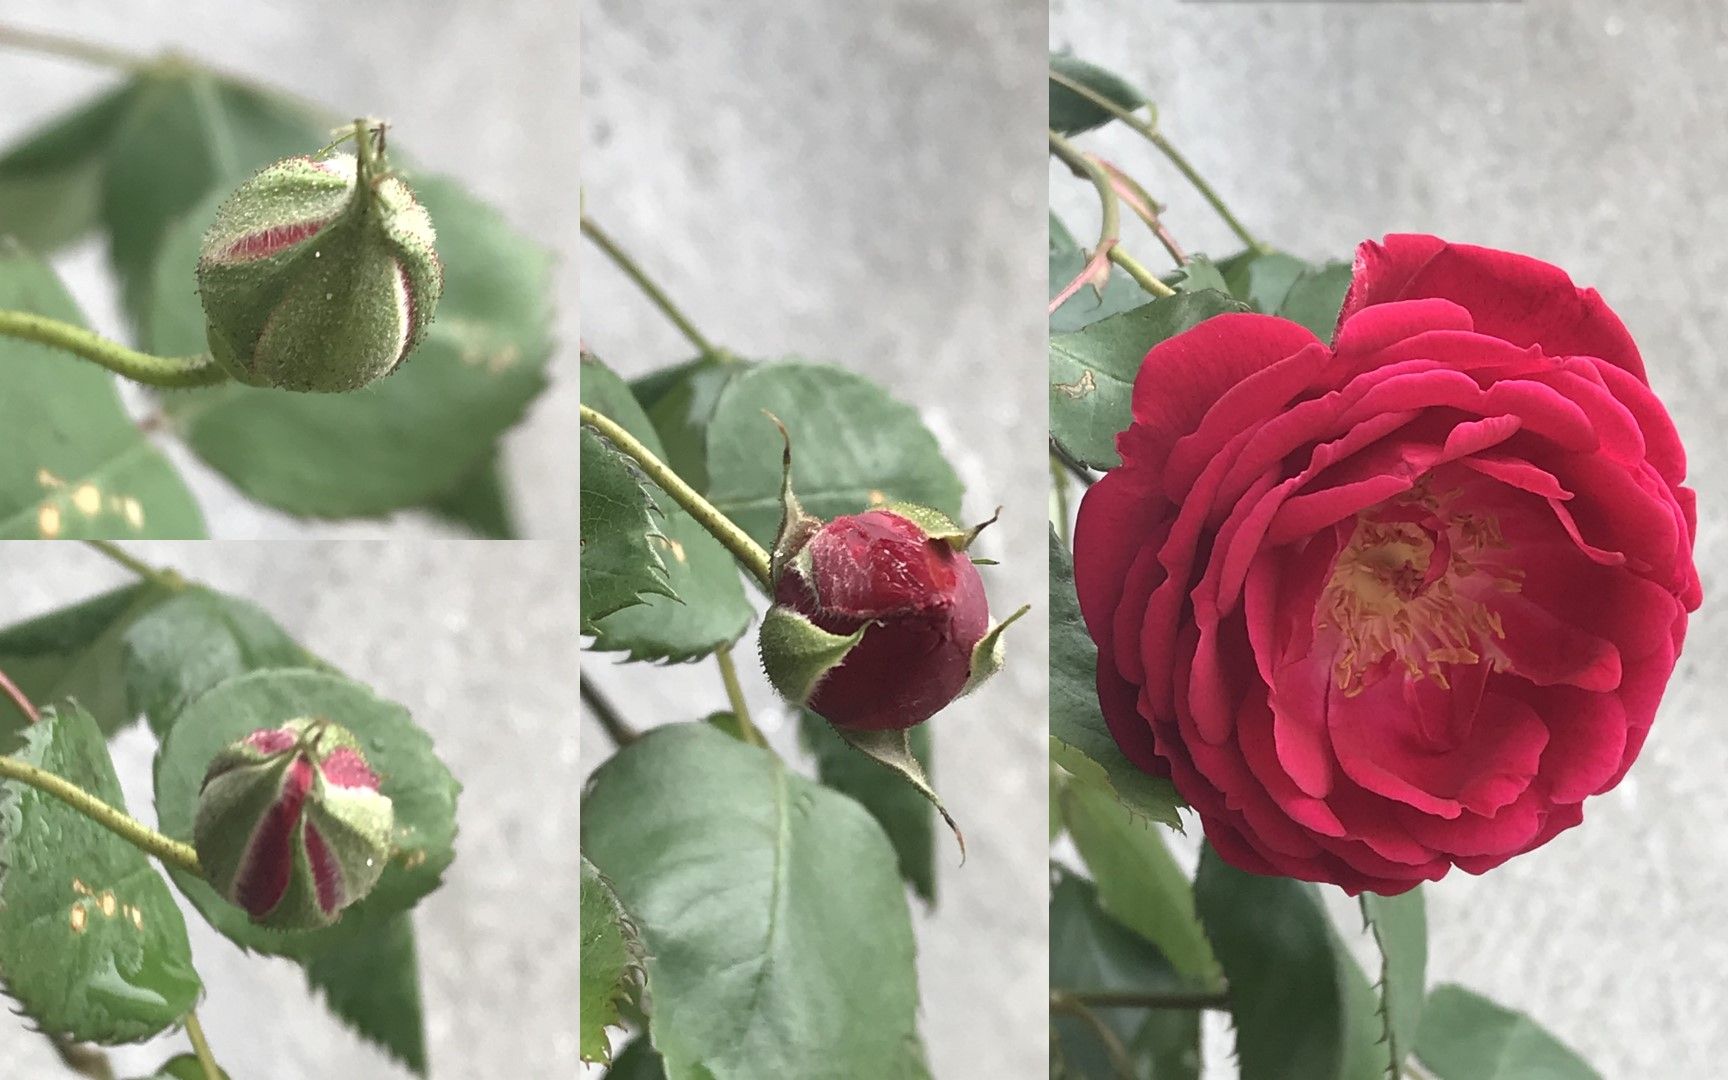 玫瑰花的生长顺序图片